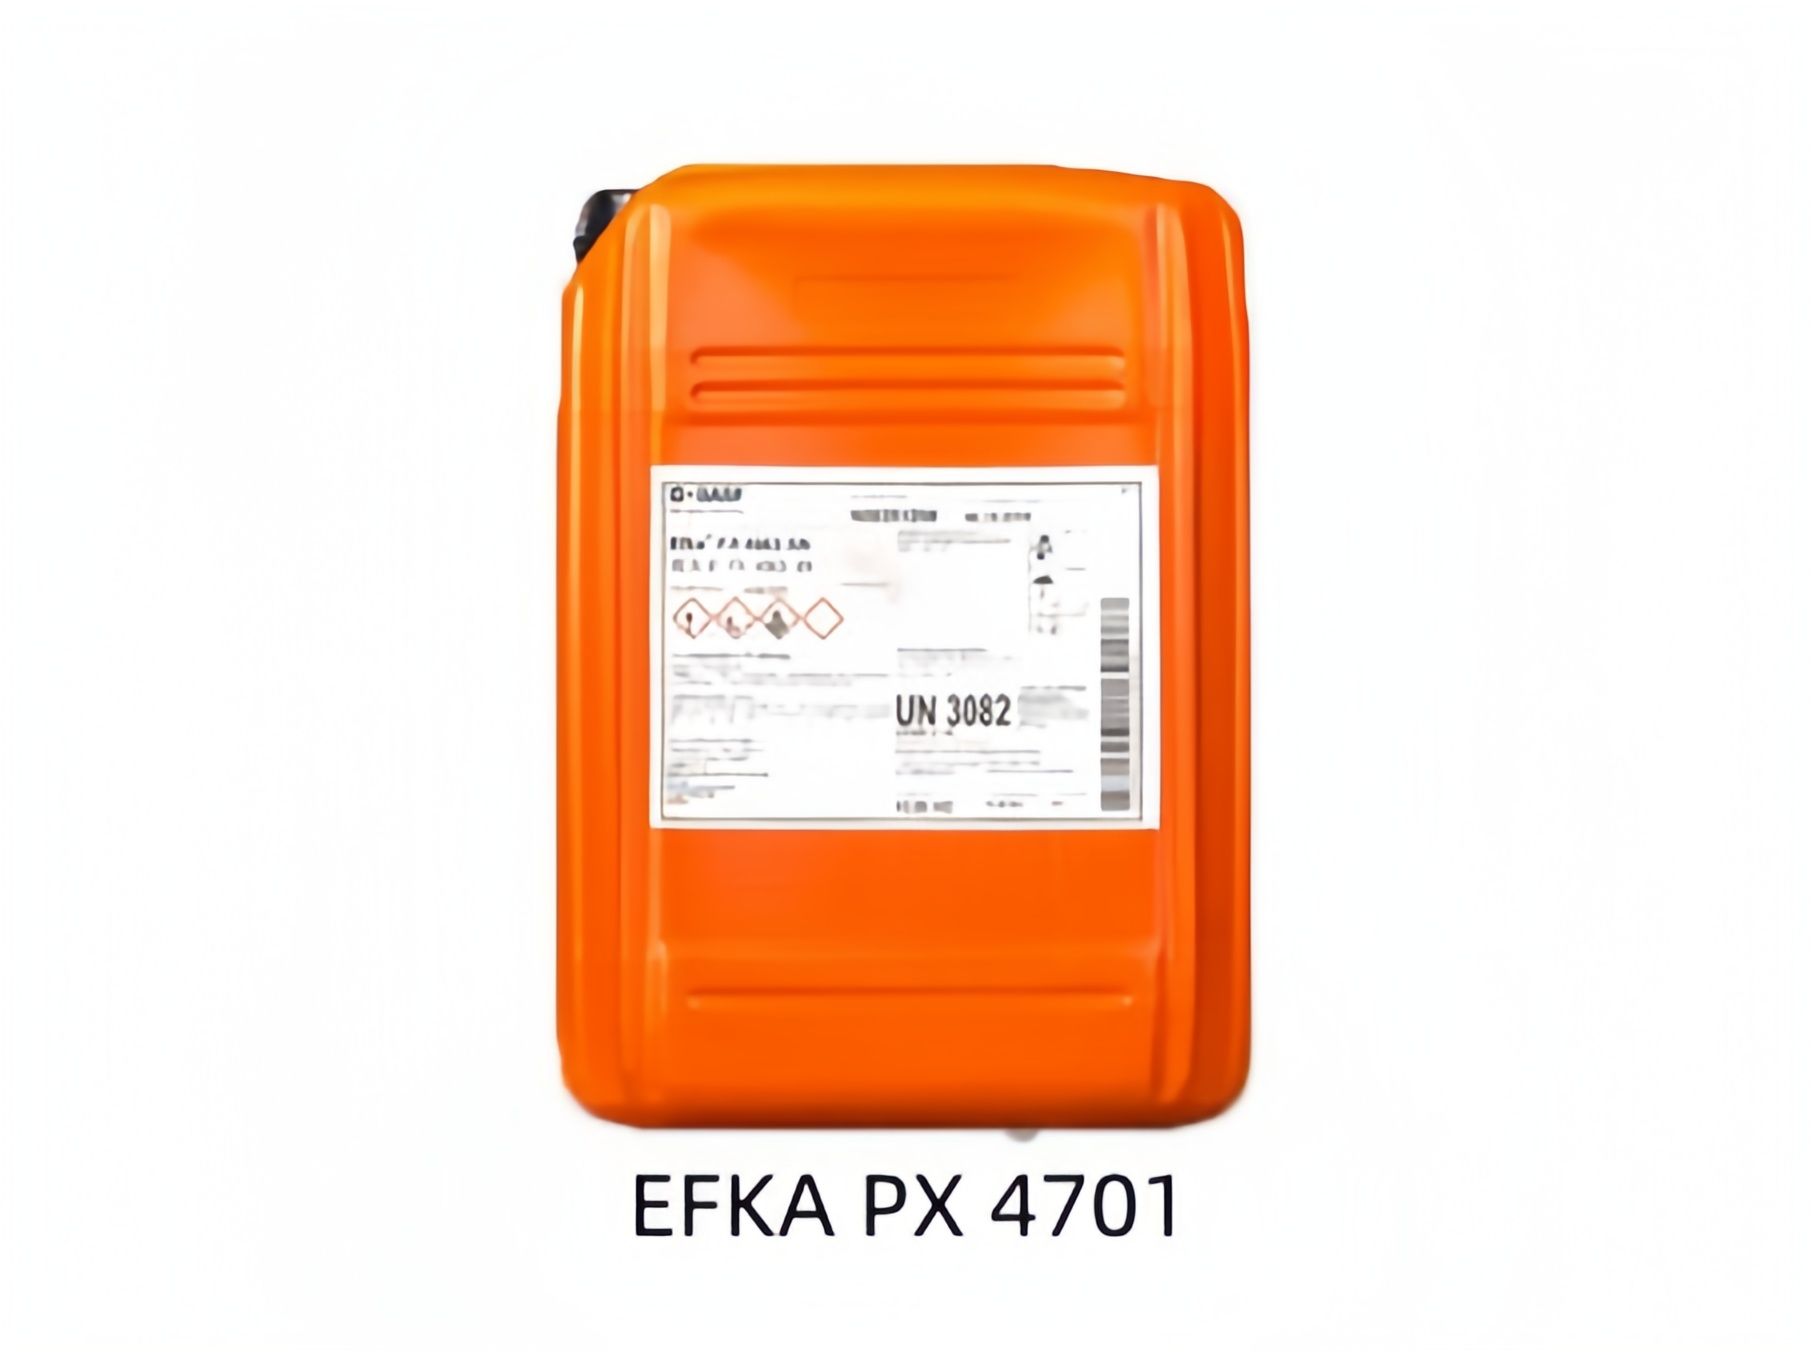 巴斯夫分散剂EFKA PX 4701